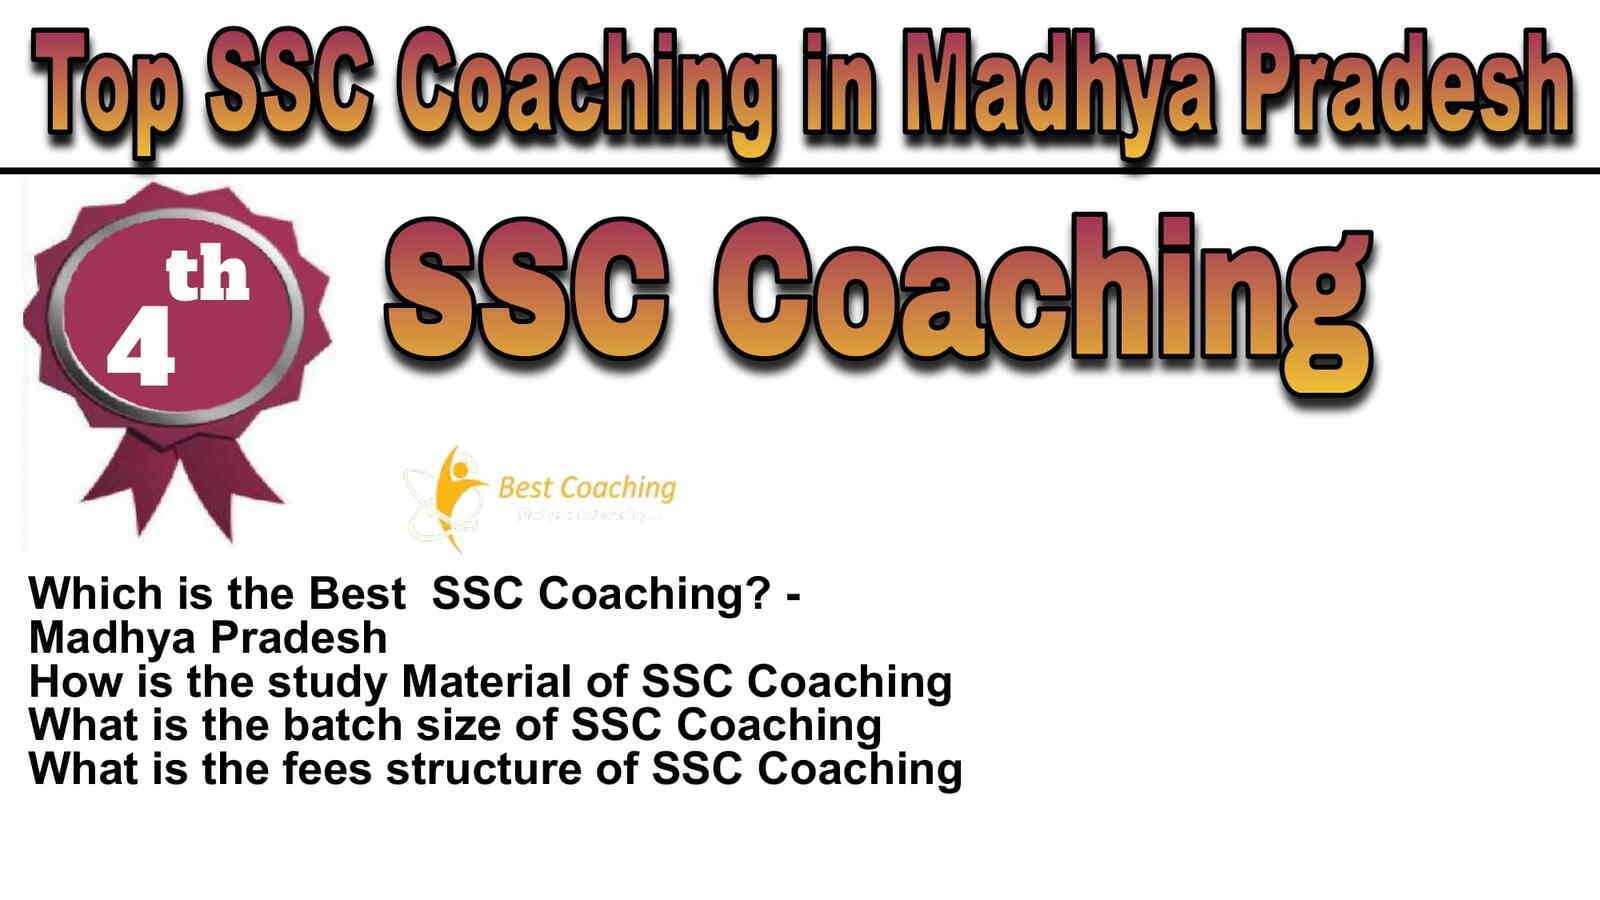 Rank 4 Best SSC Coaching in Madhya Pradesh